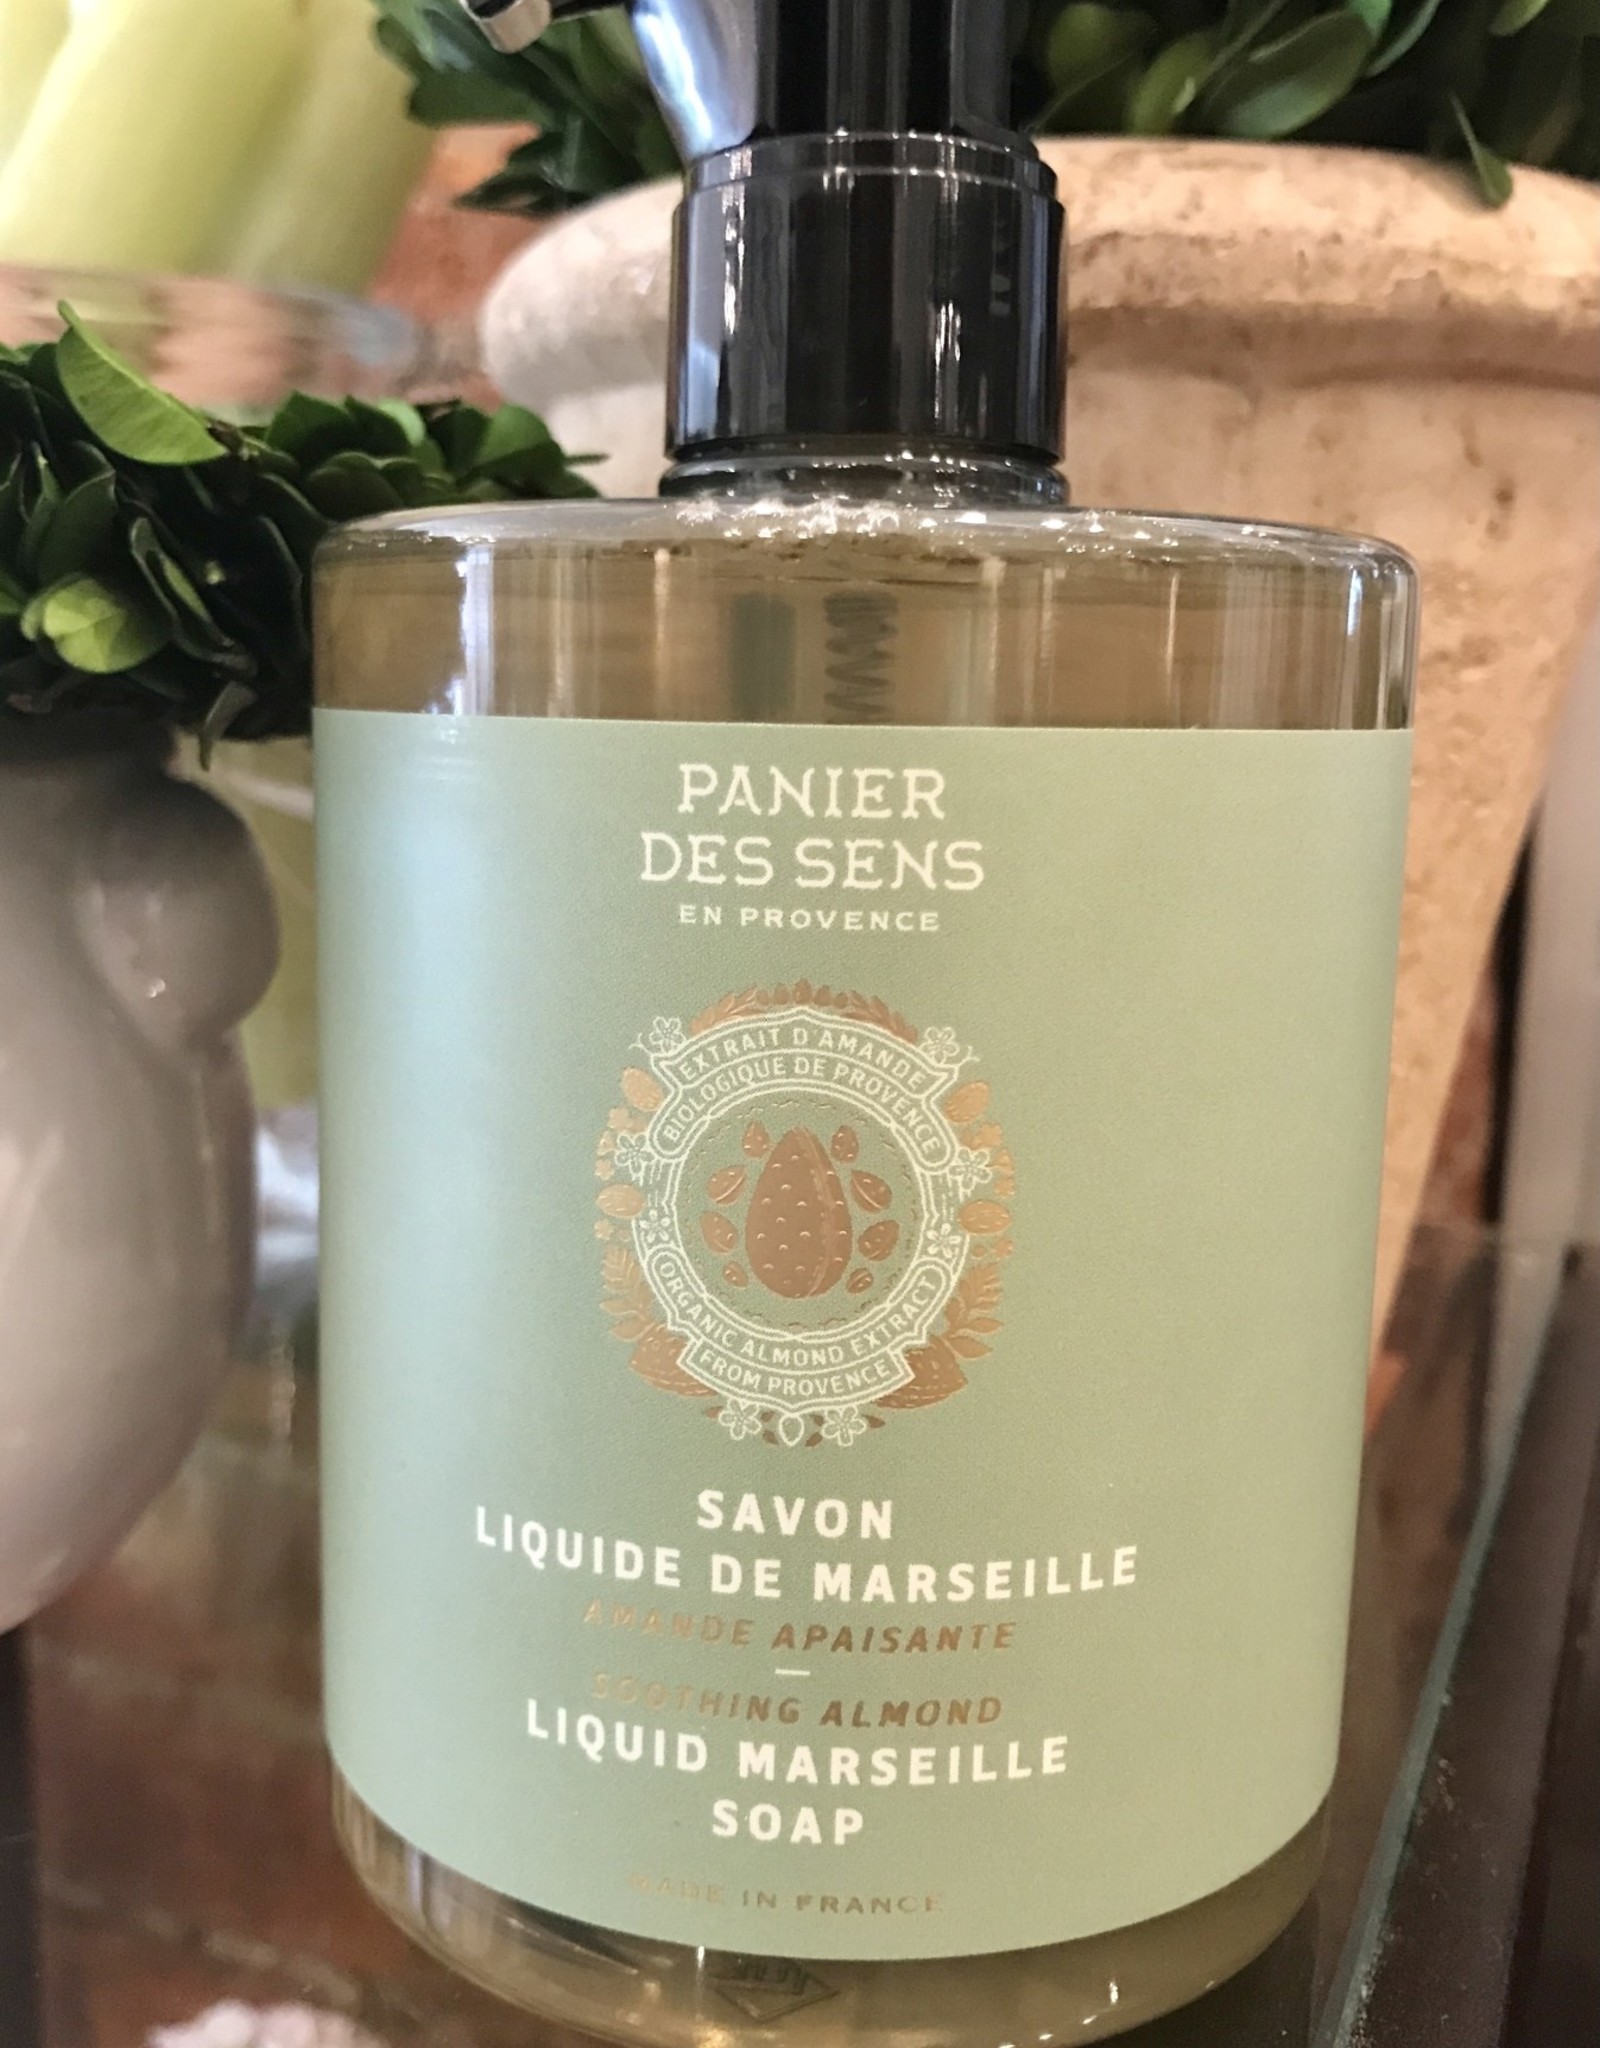 Panier Des Sens Liquid Marseille Soap "Soothing Almond" 16.9 oz. - Panier Des Sens